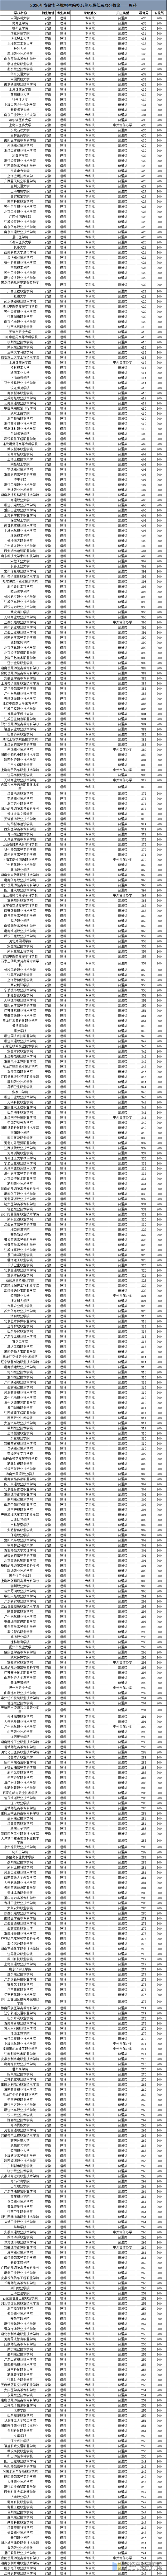 2020年安徽高考专科批招生院校名单及最低录取分数线——理科